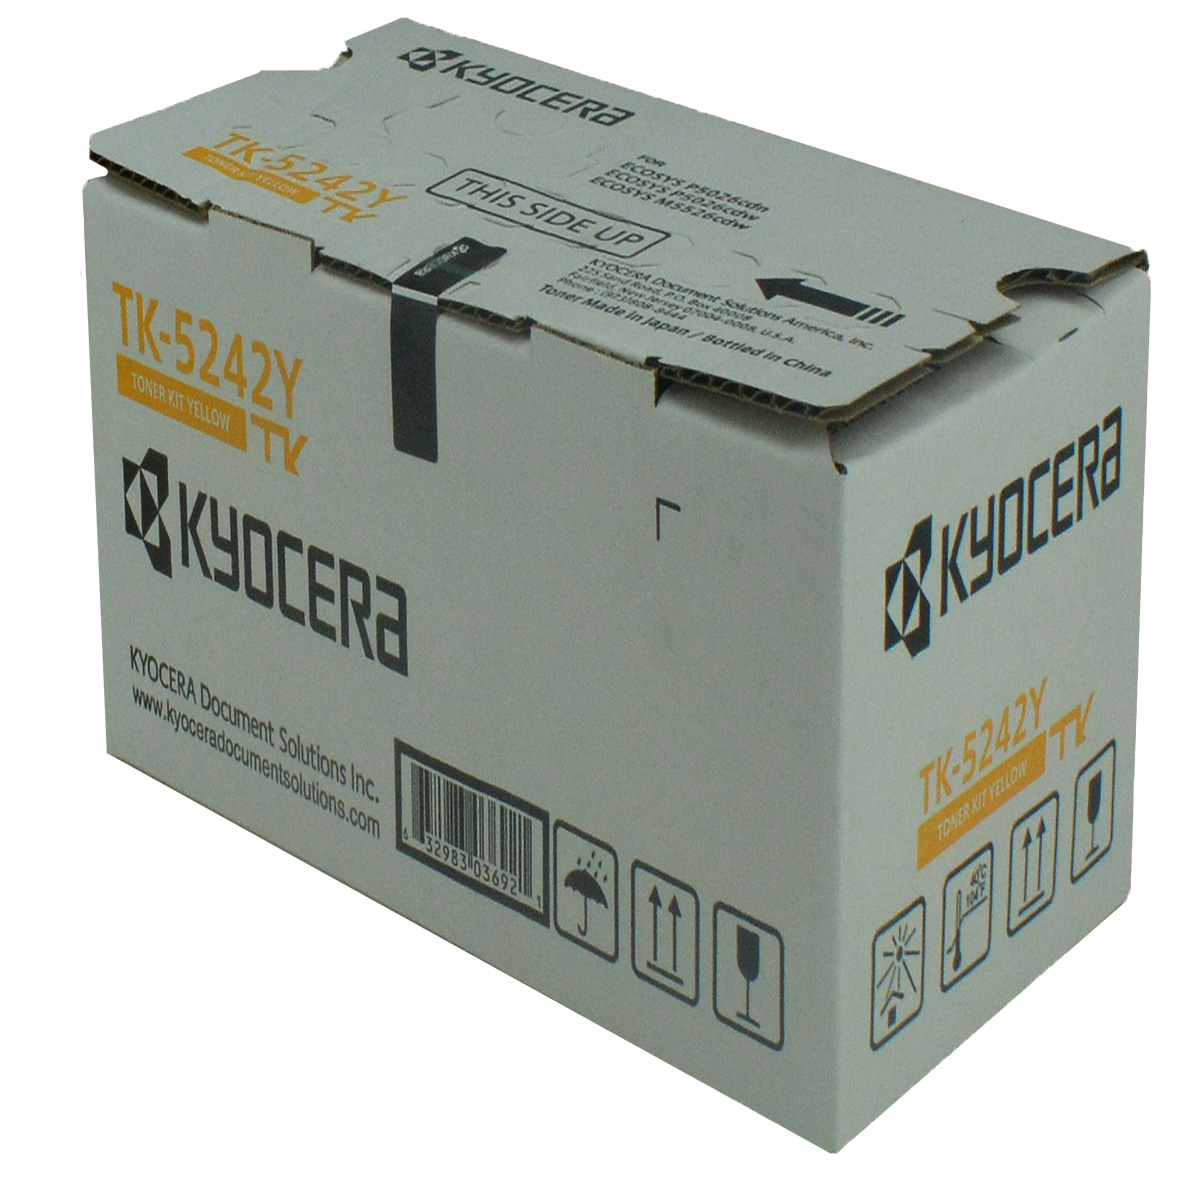 OEM Kyocera Mita TK-5242Y (1T02R7AUS0) Toner Cartridge, YELLOW, 3K YIELD - for use in Kyocera Mita M5526CDW printer, P5026CDW - image 1 of 1